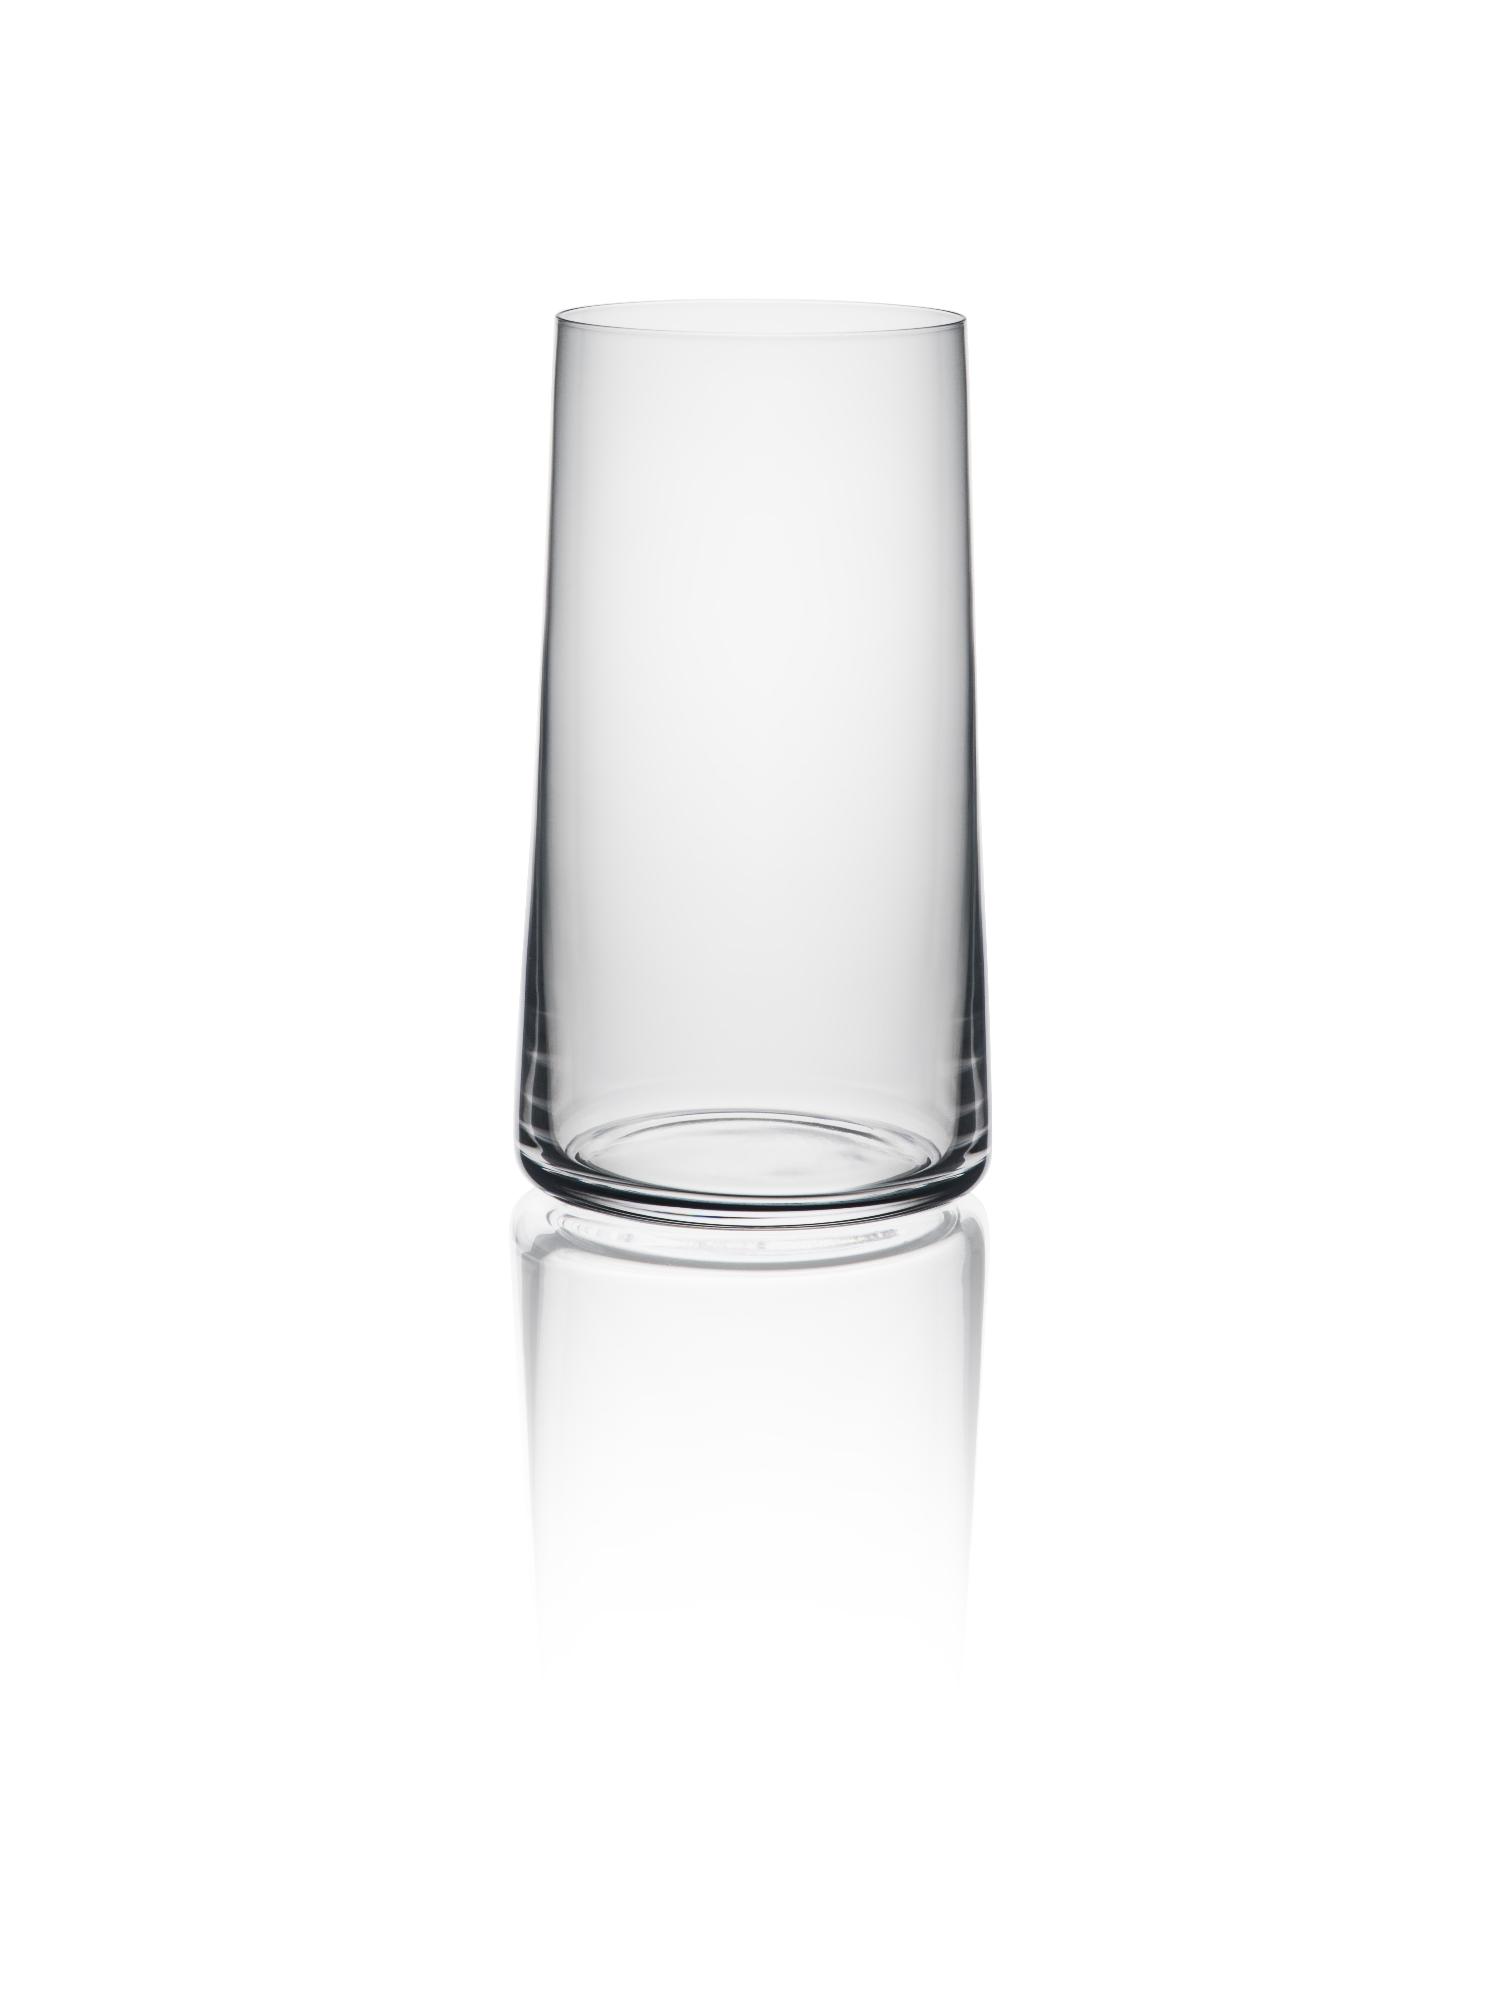 Mode highball glass, 430ml